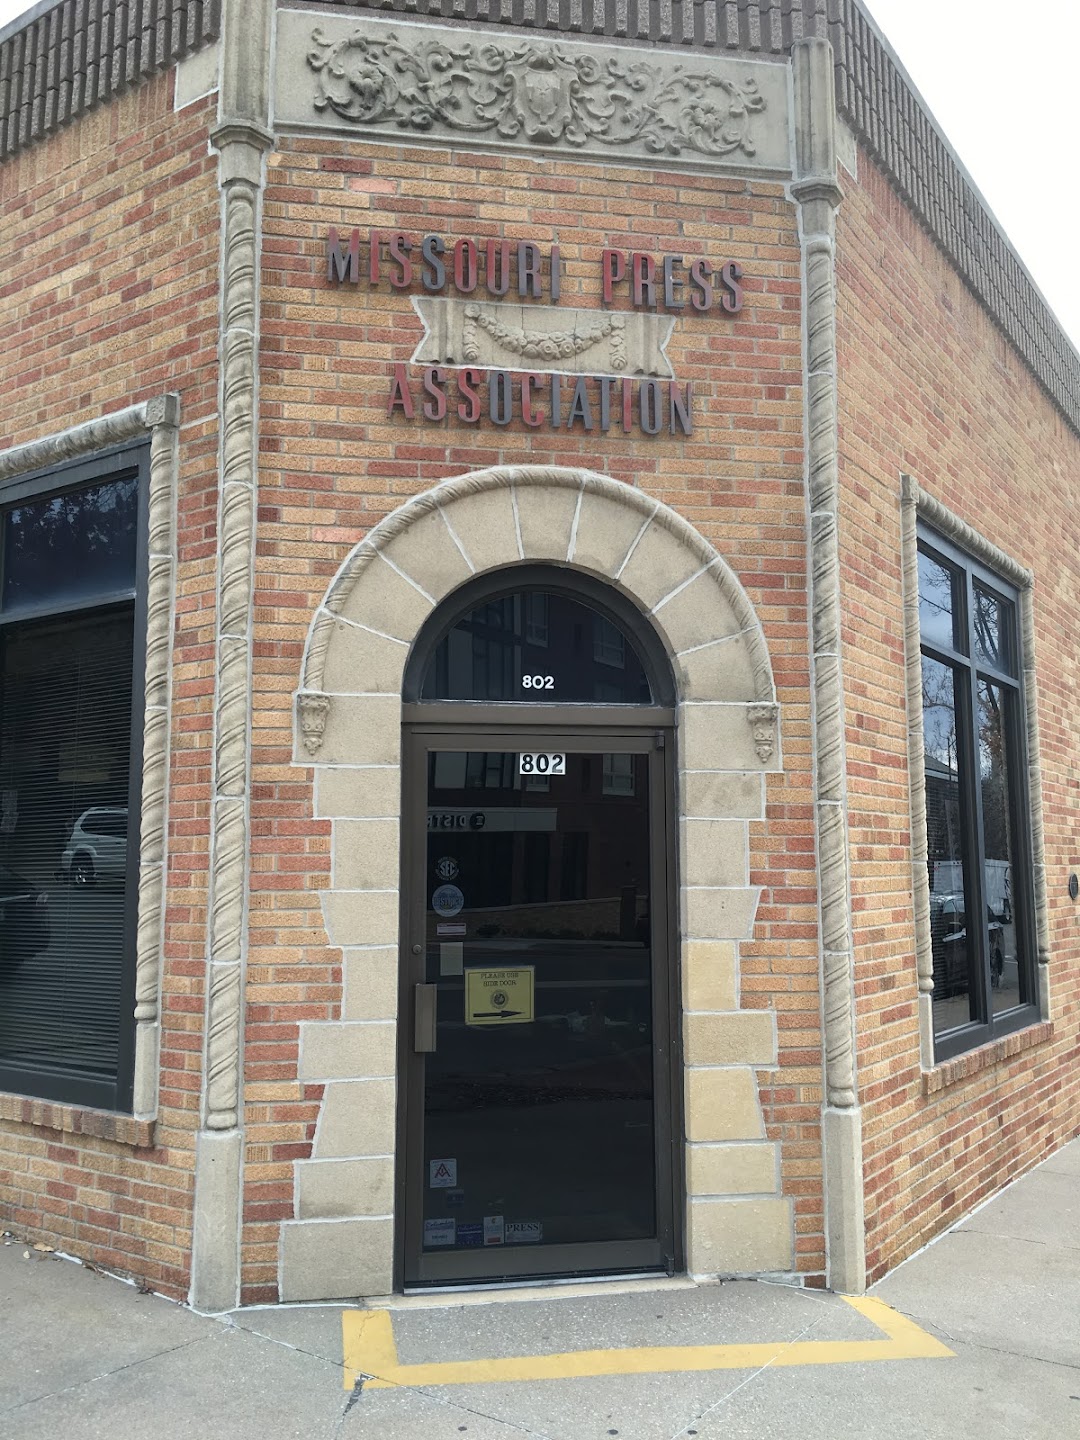 Missouri Press Association